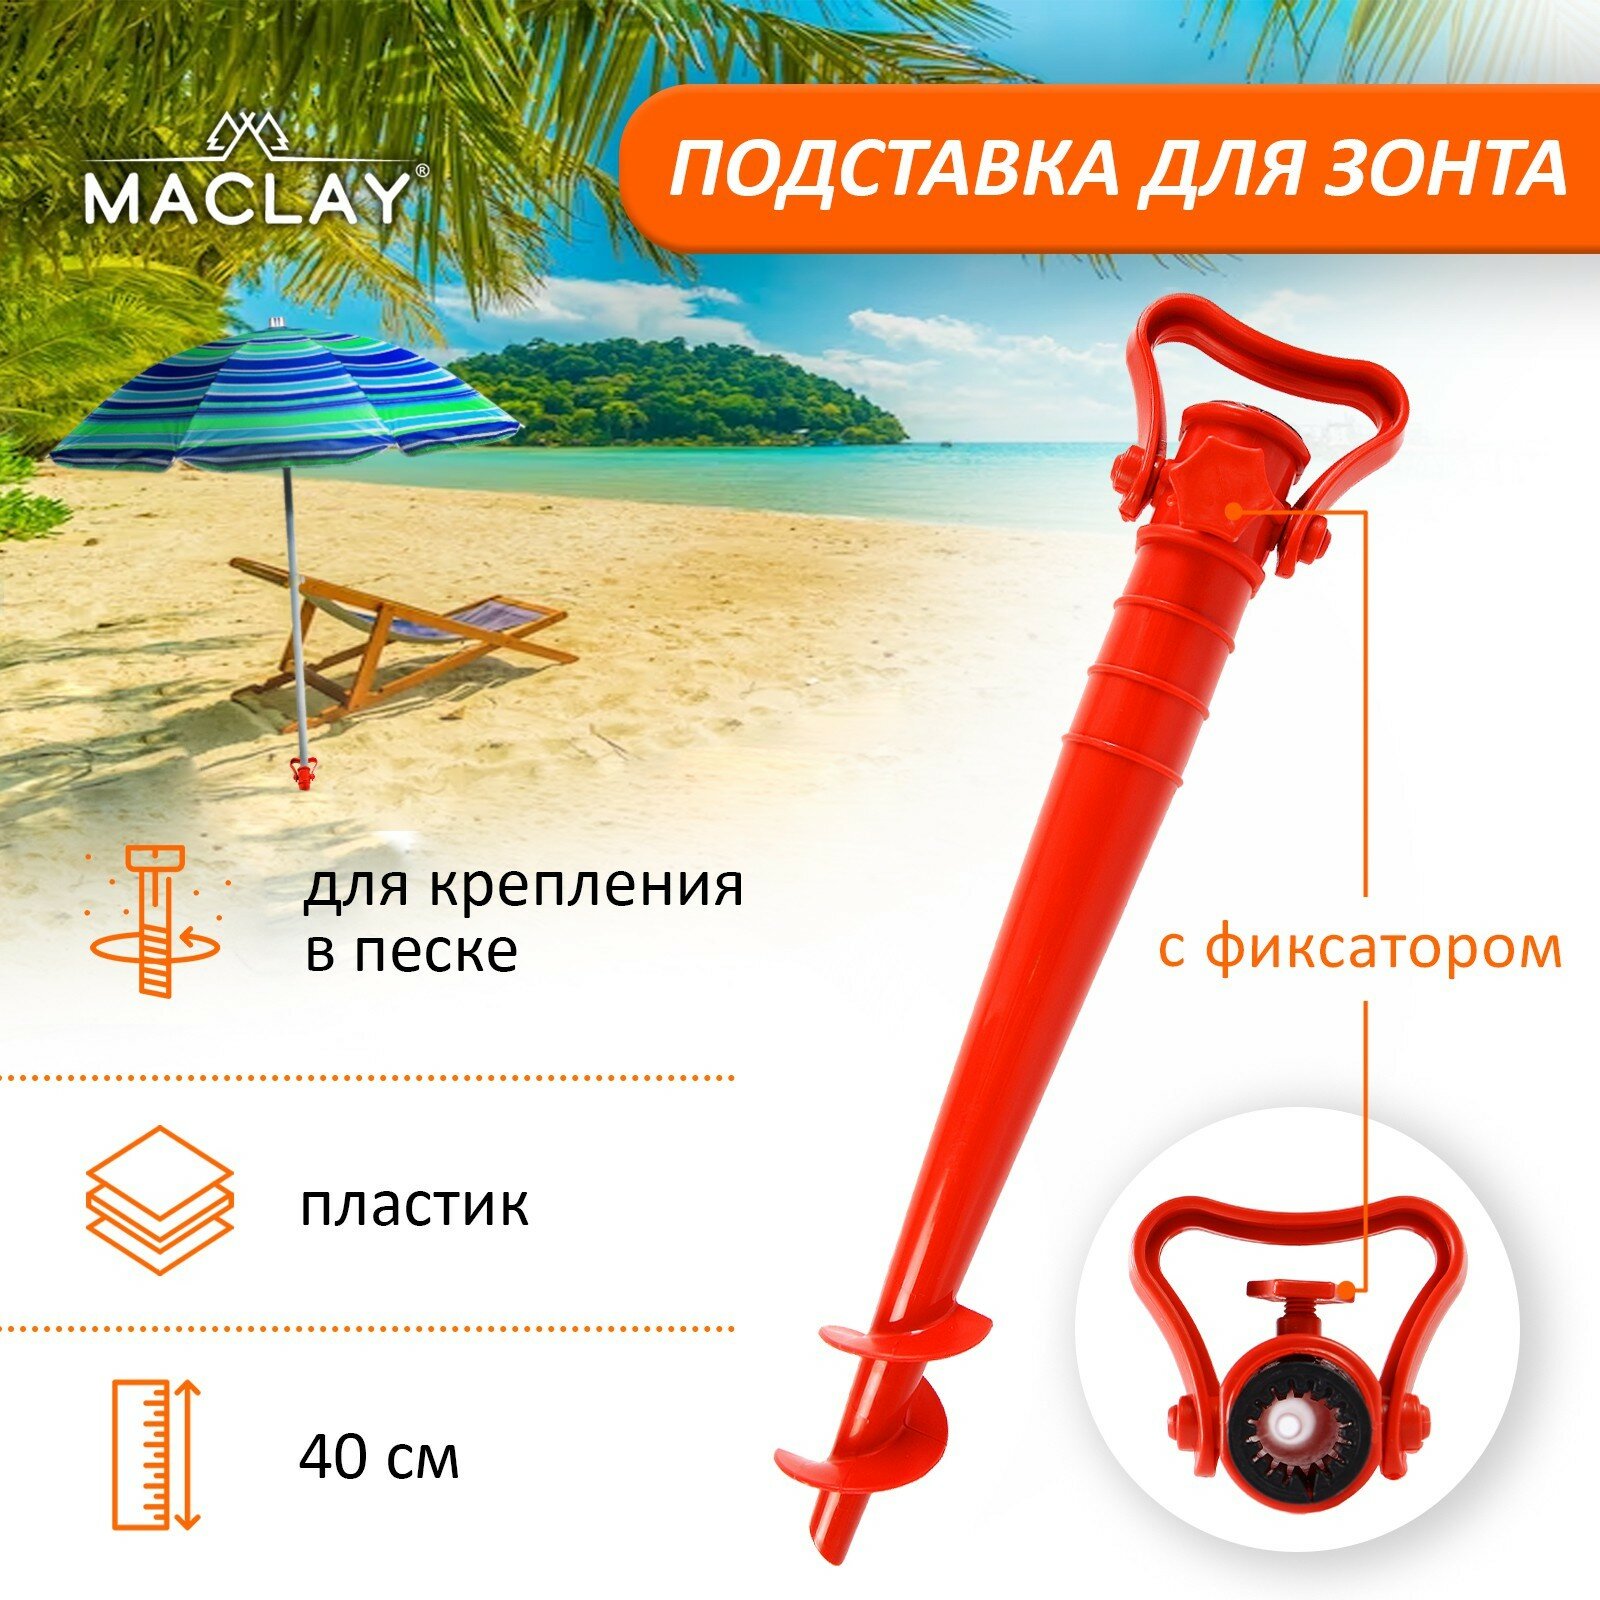 Подставка для крепления зонта в песке 40 см с фиксатором, цвета микс - фотография № 1